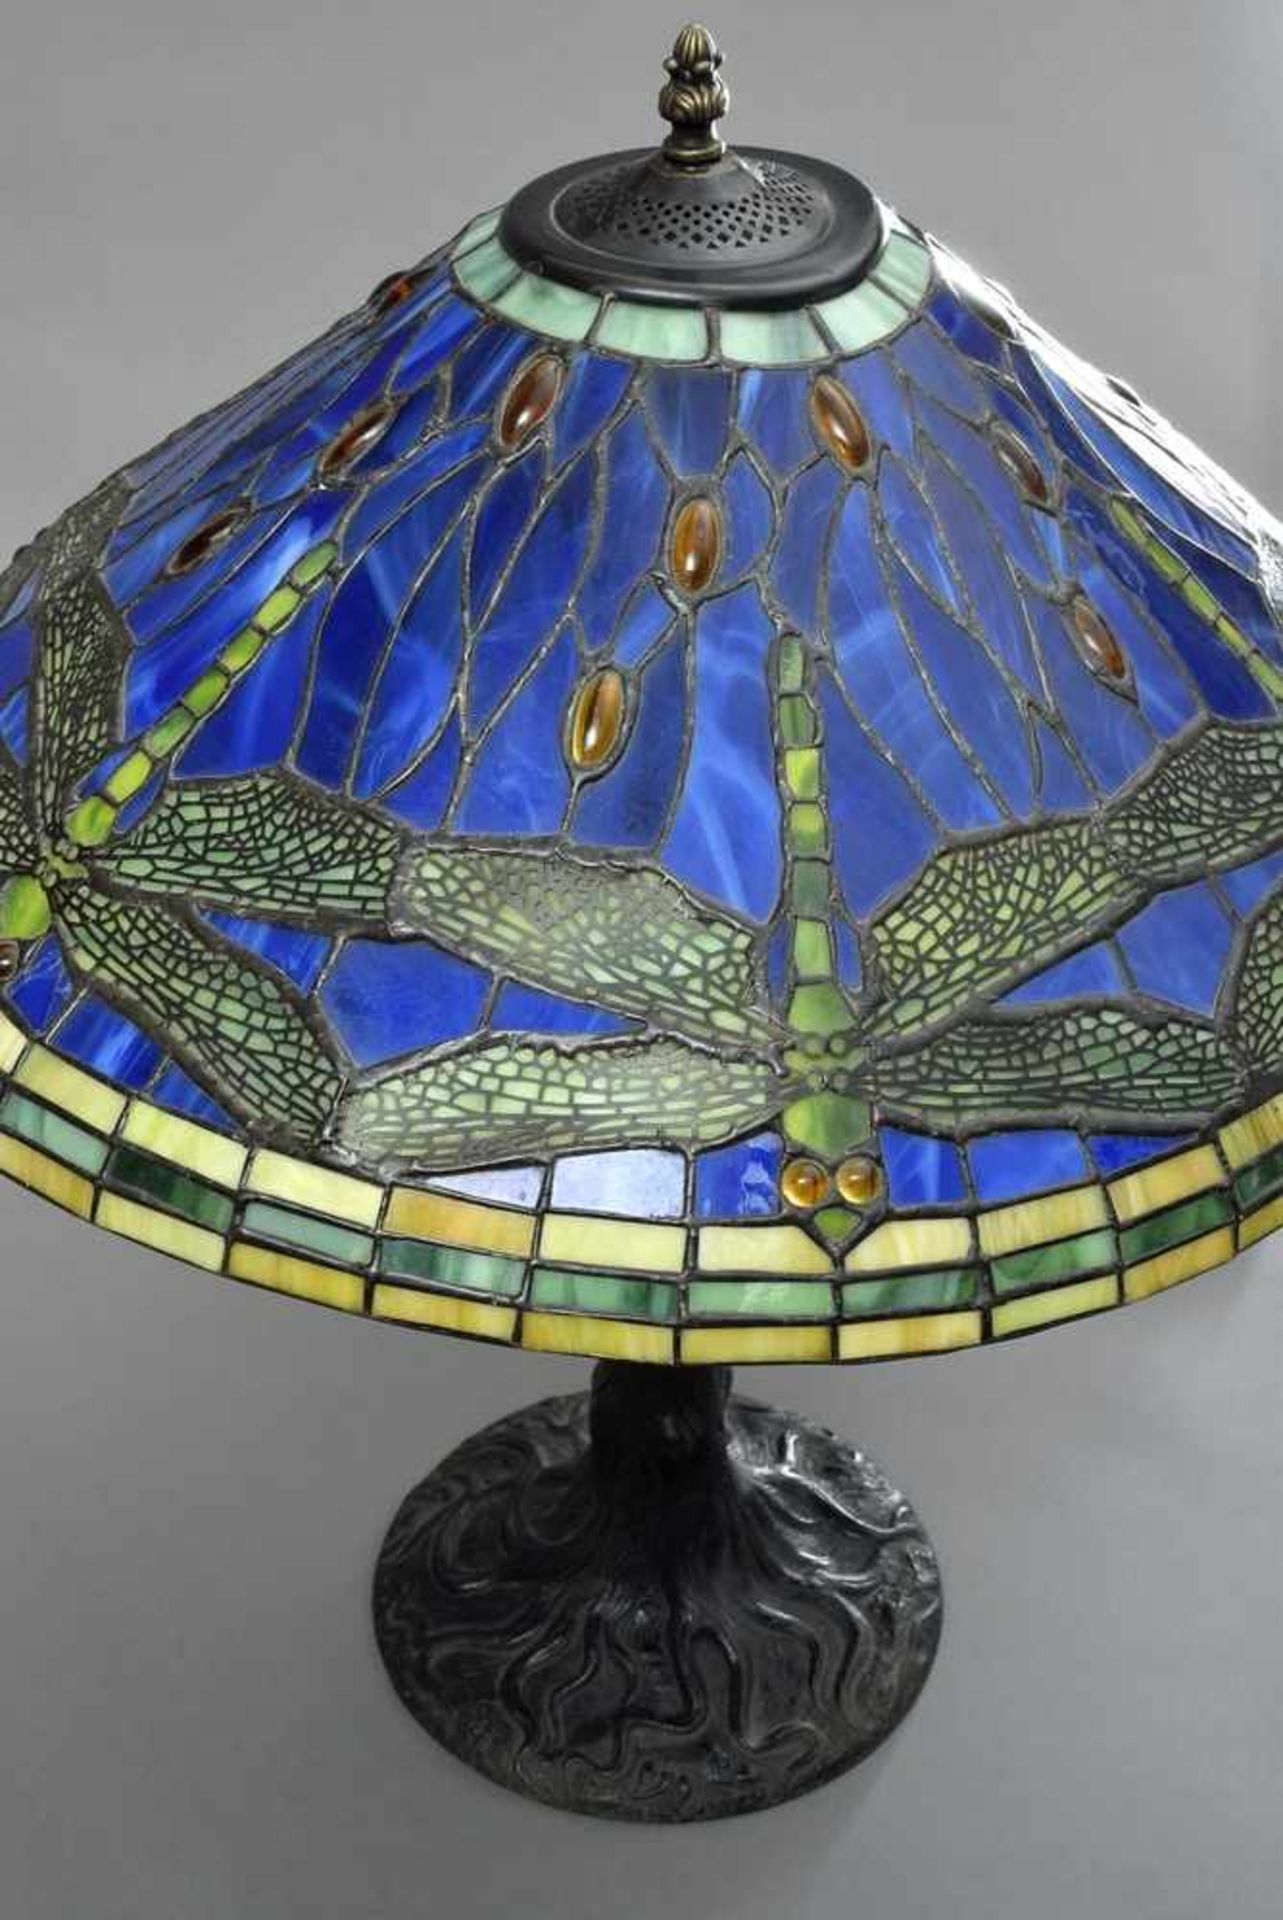 Jugendstil Lampe mit Bleiverglastem Schirm "Libellen" in Tiffany Art, wohl Handel USA, H. 63cm, - Bild 2 aus 3